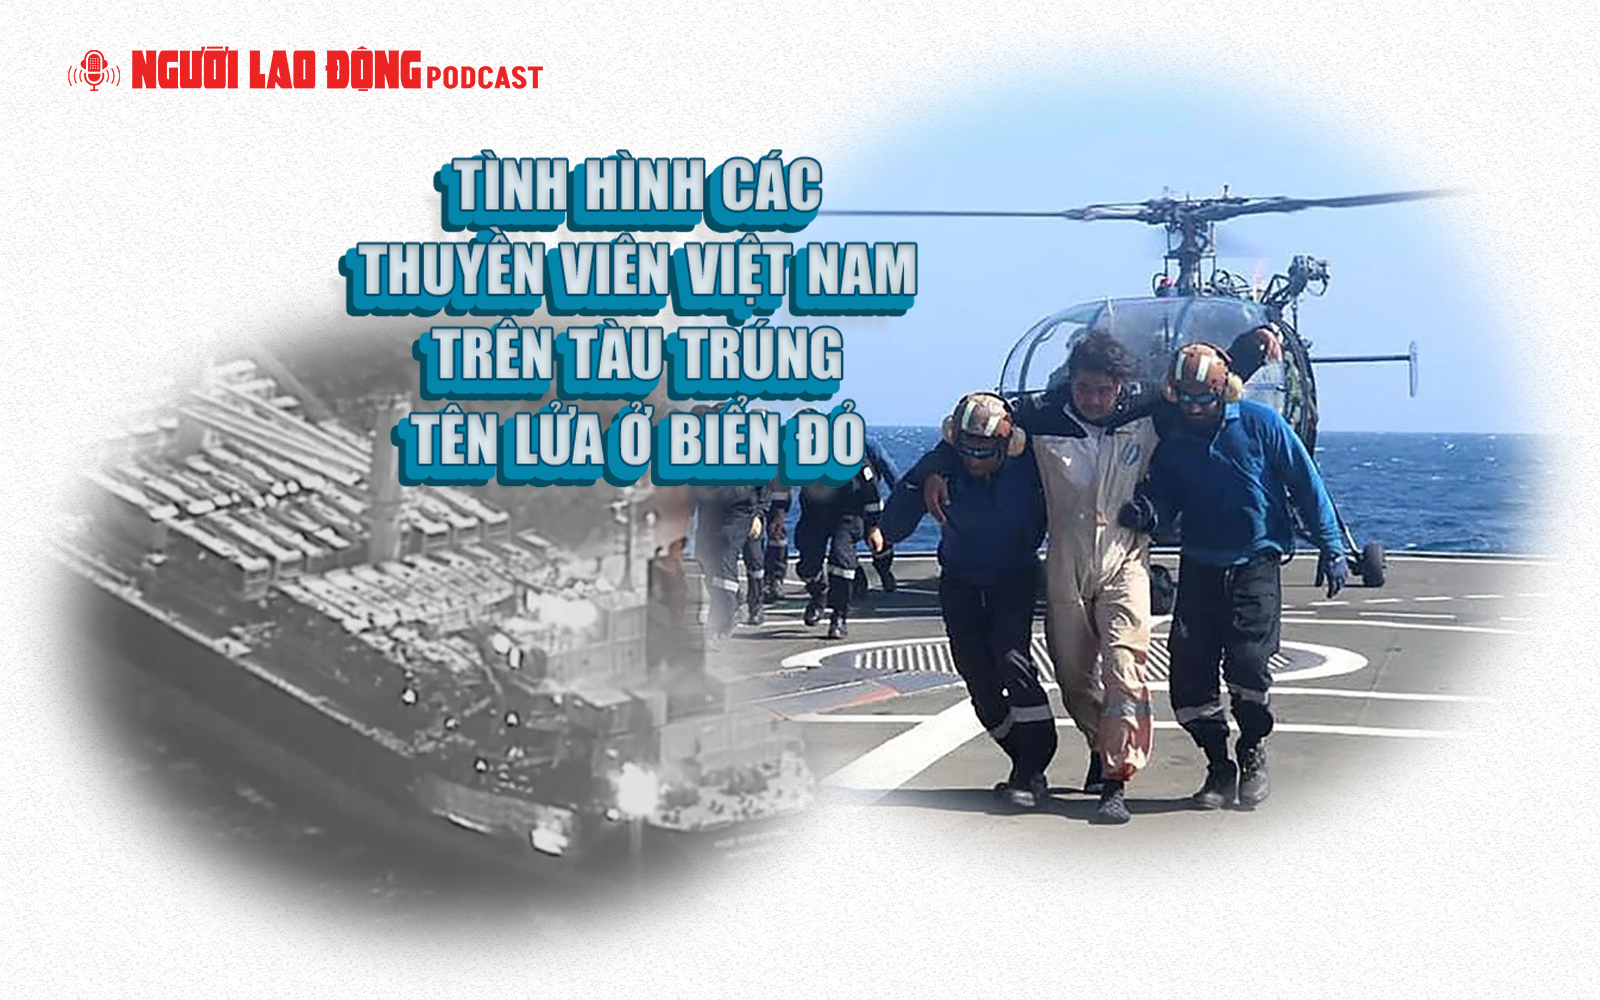 Tình hình các thuyền viên Việt Nam trên tàu trúng tên lửa ở Biển Đỏ